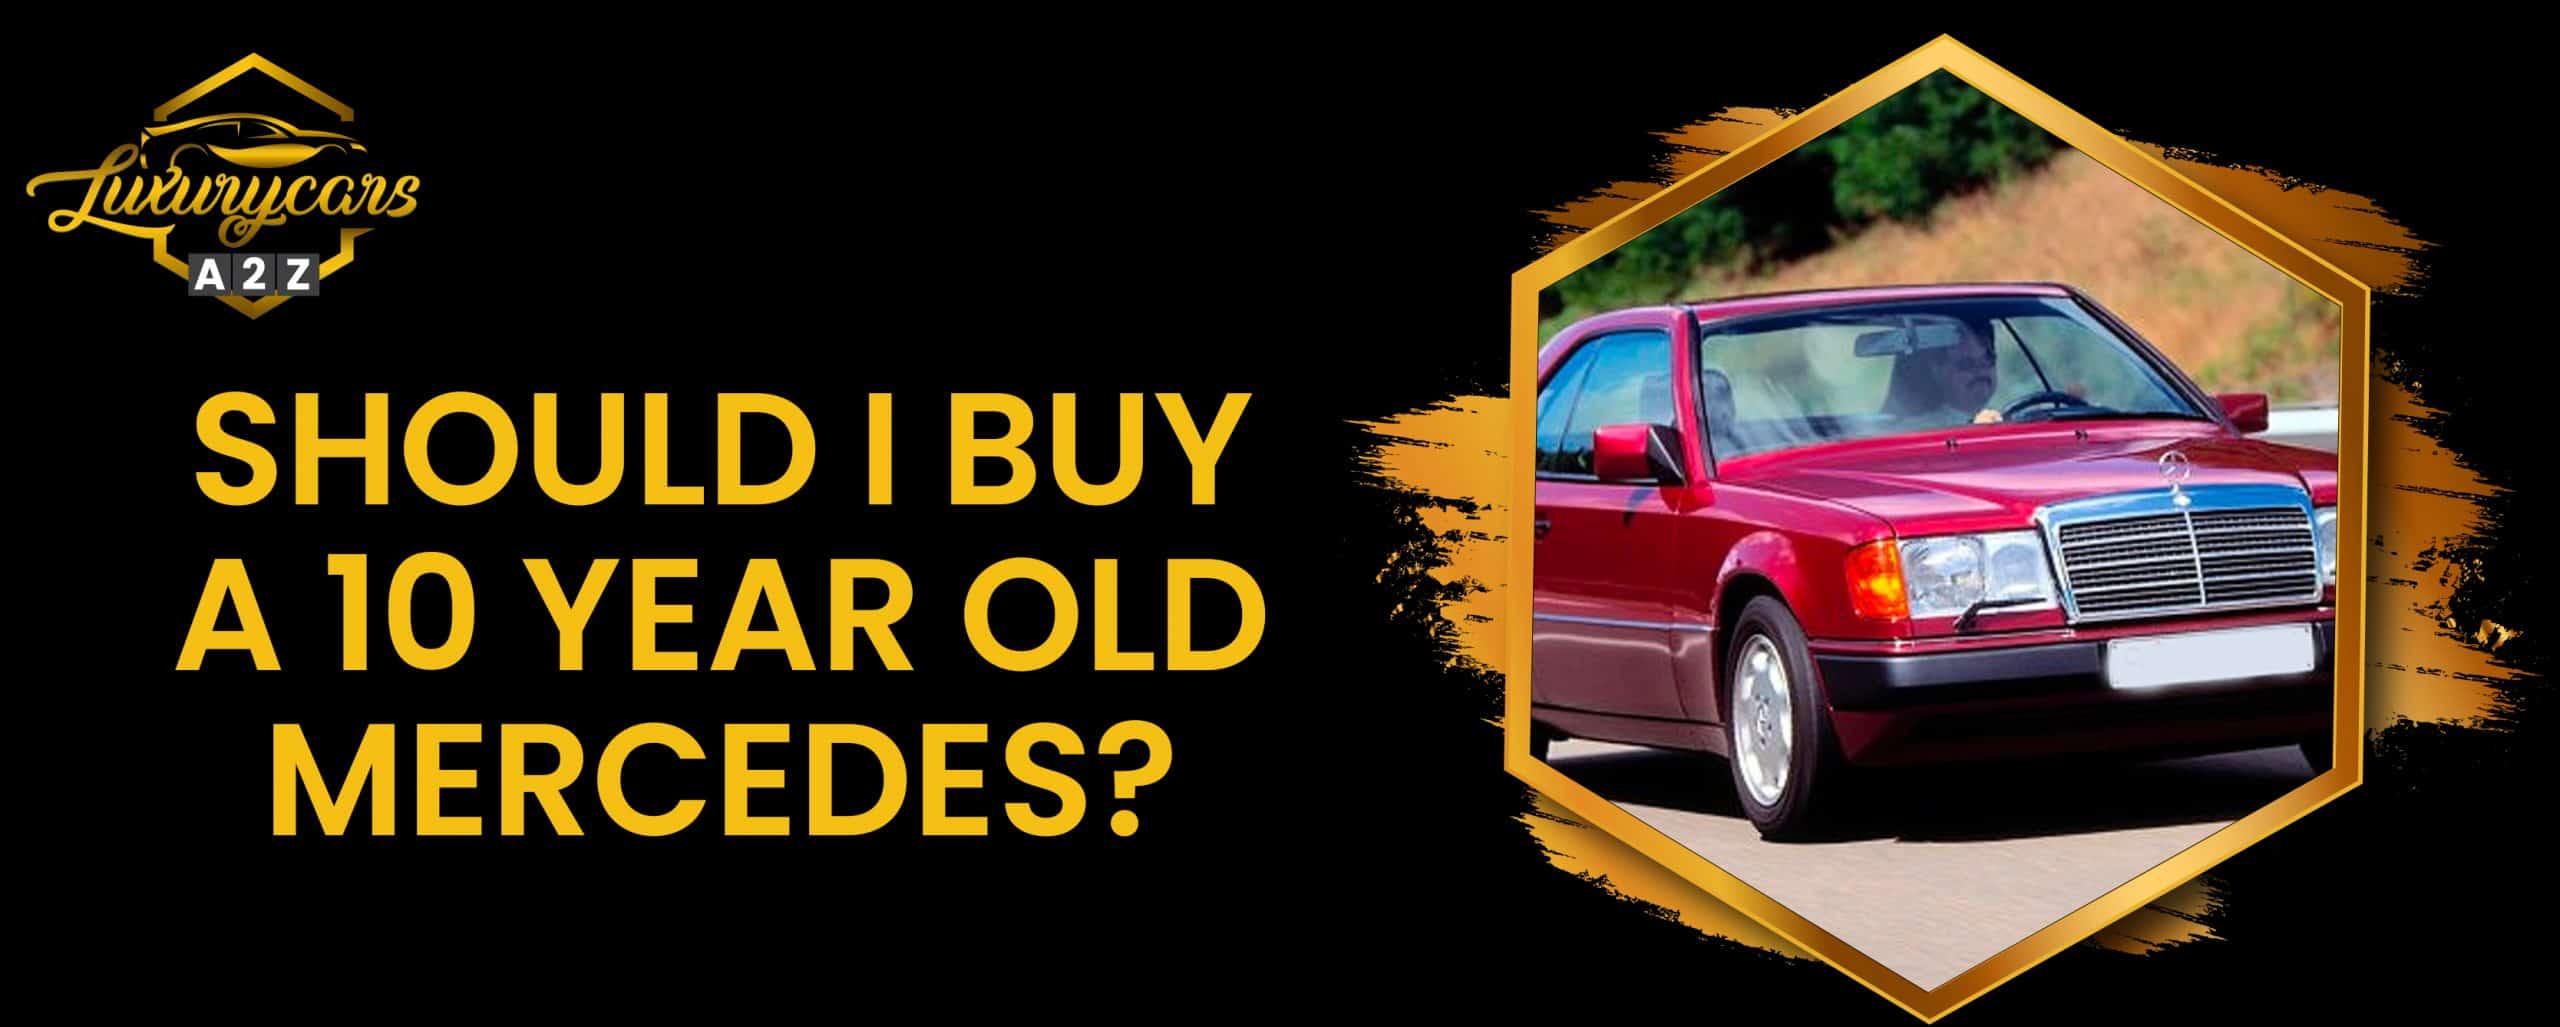 Dois-je acheter une Mercedes de 10 ans d'âge ?